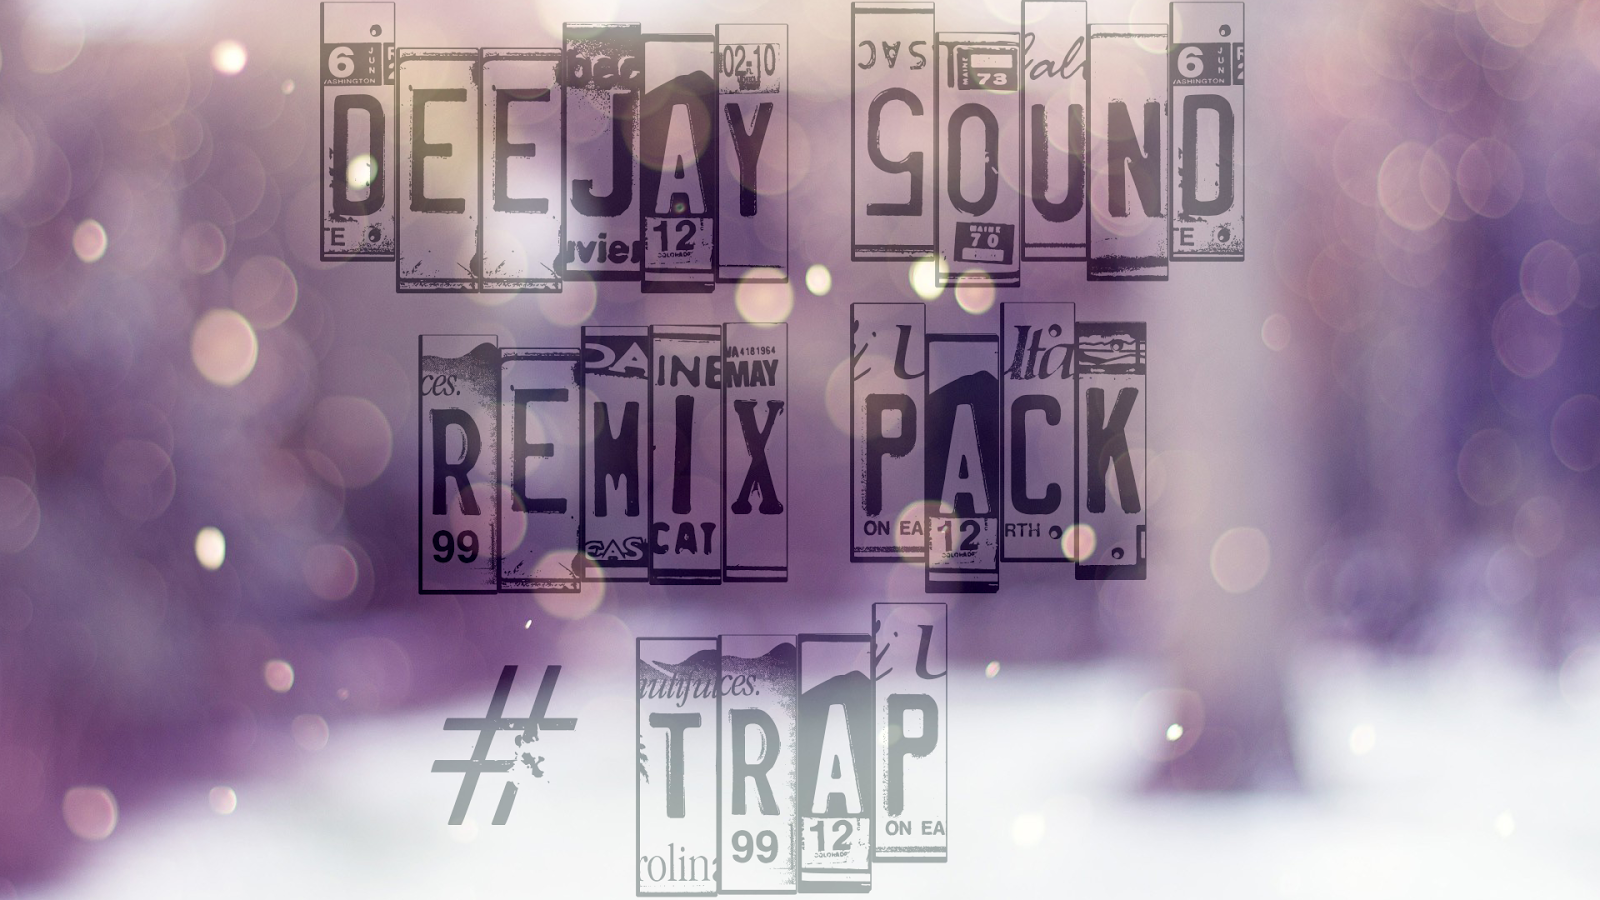 DeejaySound Remix Pack - Trap. 